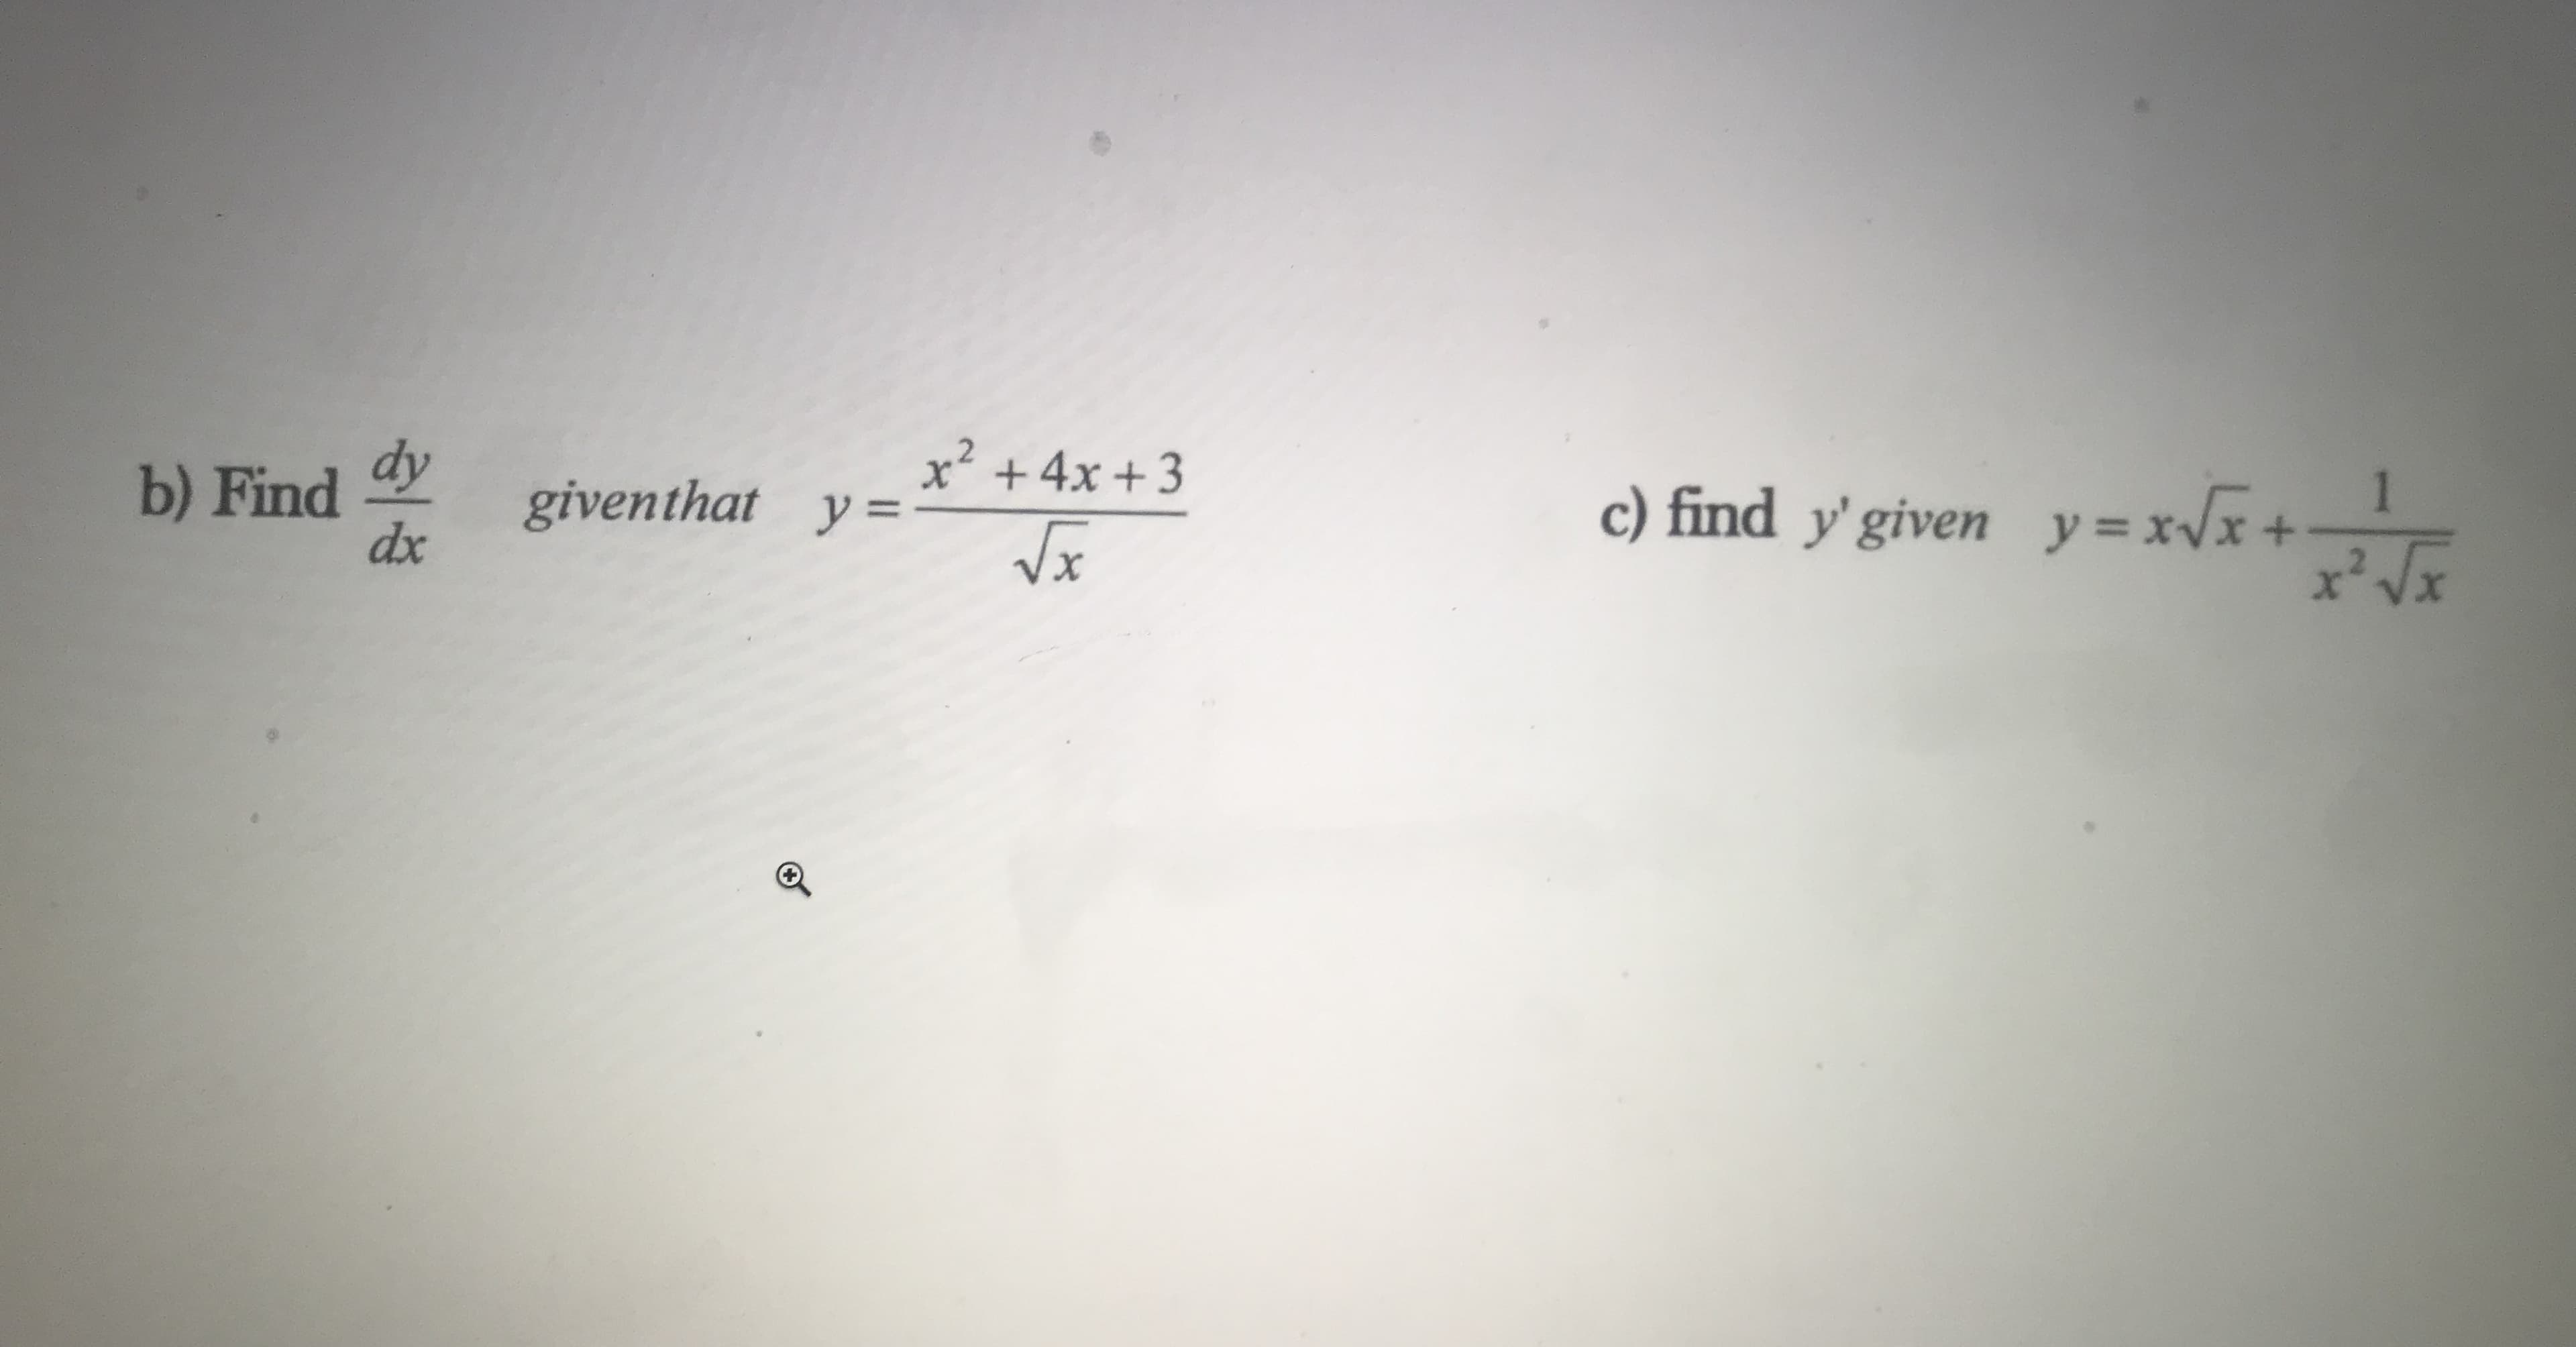 b) Find dy
dx
x²
giventhat y=
+4x +3
c) find y'given y=xVx
1.
